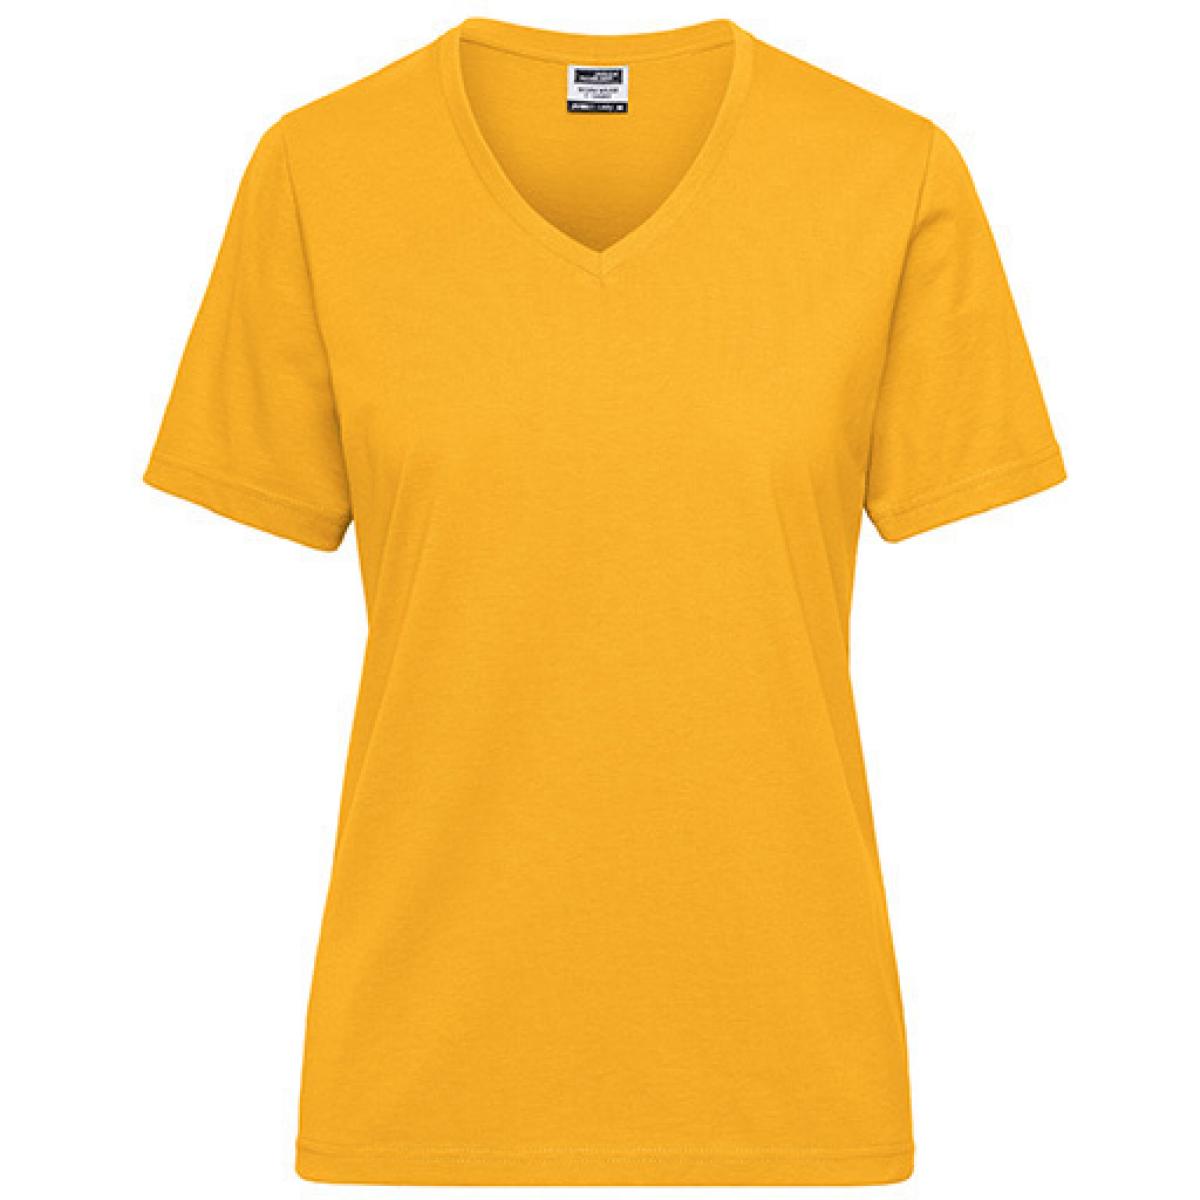 Hersteller: James+Nicholson Herstellernummer: JN1807 Artikelbezeichnung: Ladies‘ BIO Workwear T-Shirt / Damen T-Shirt - Waschbar 60C Farbe: Gold Yellow